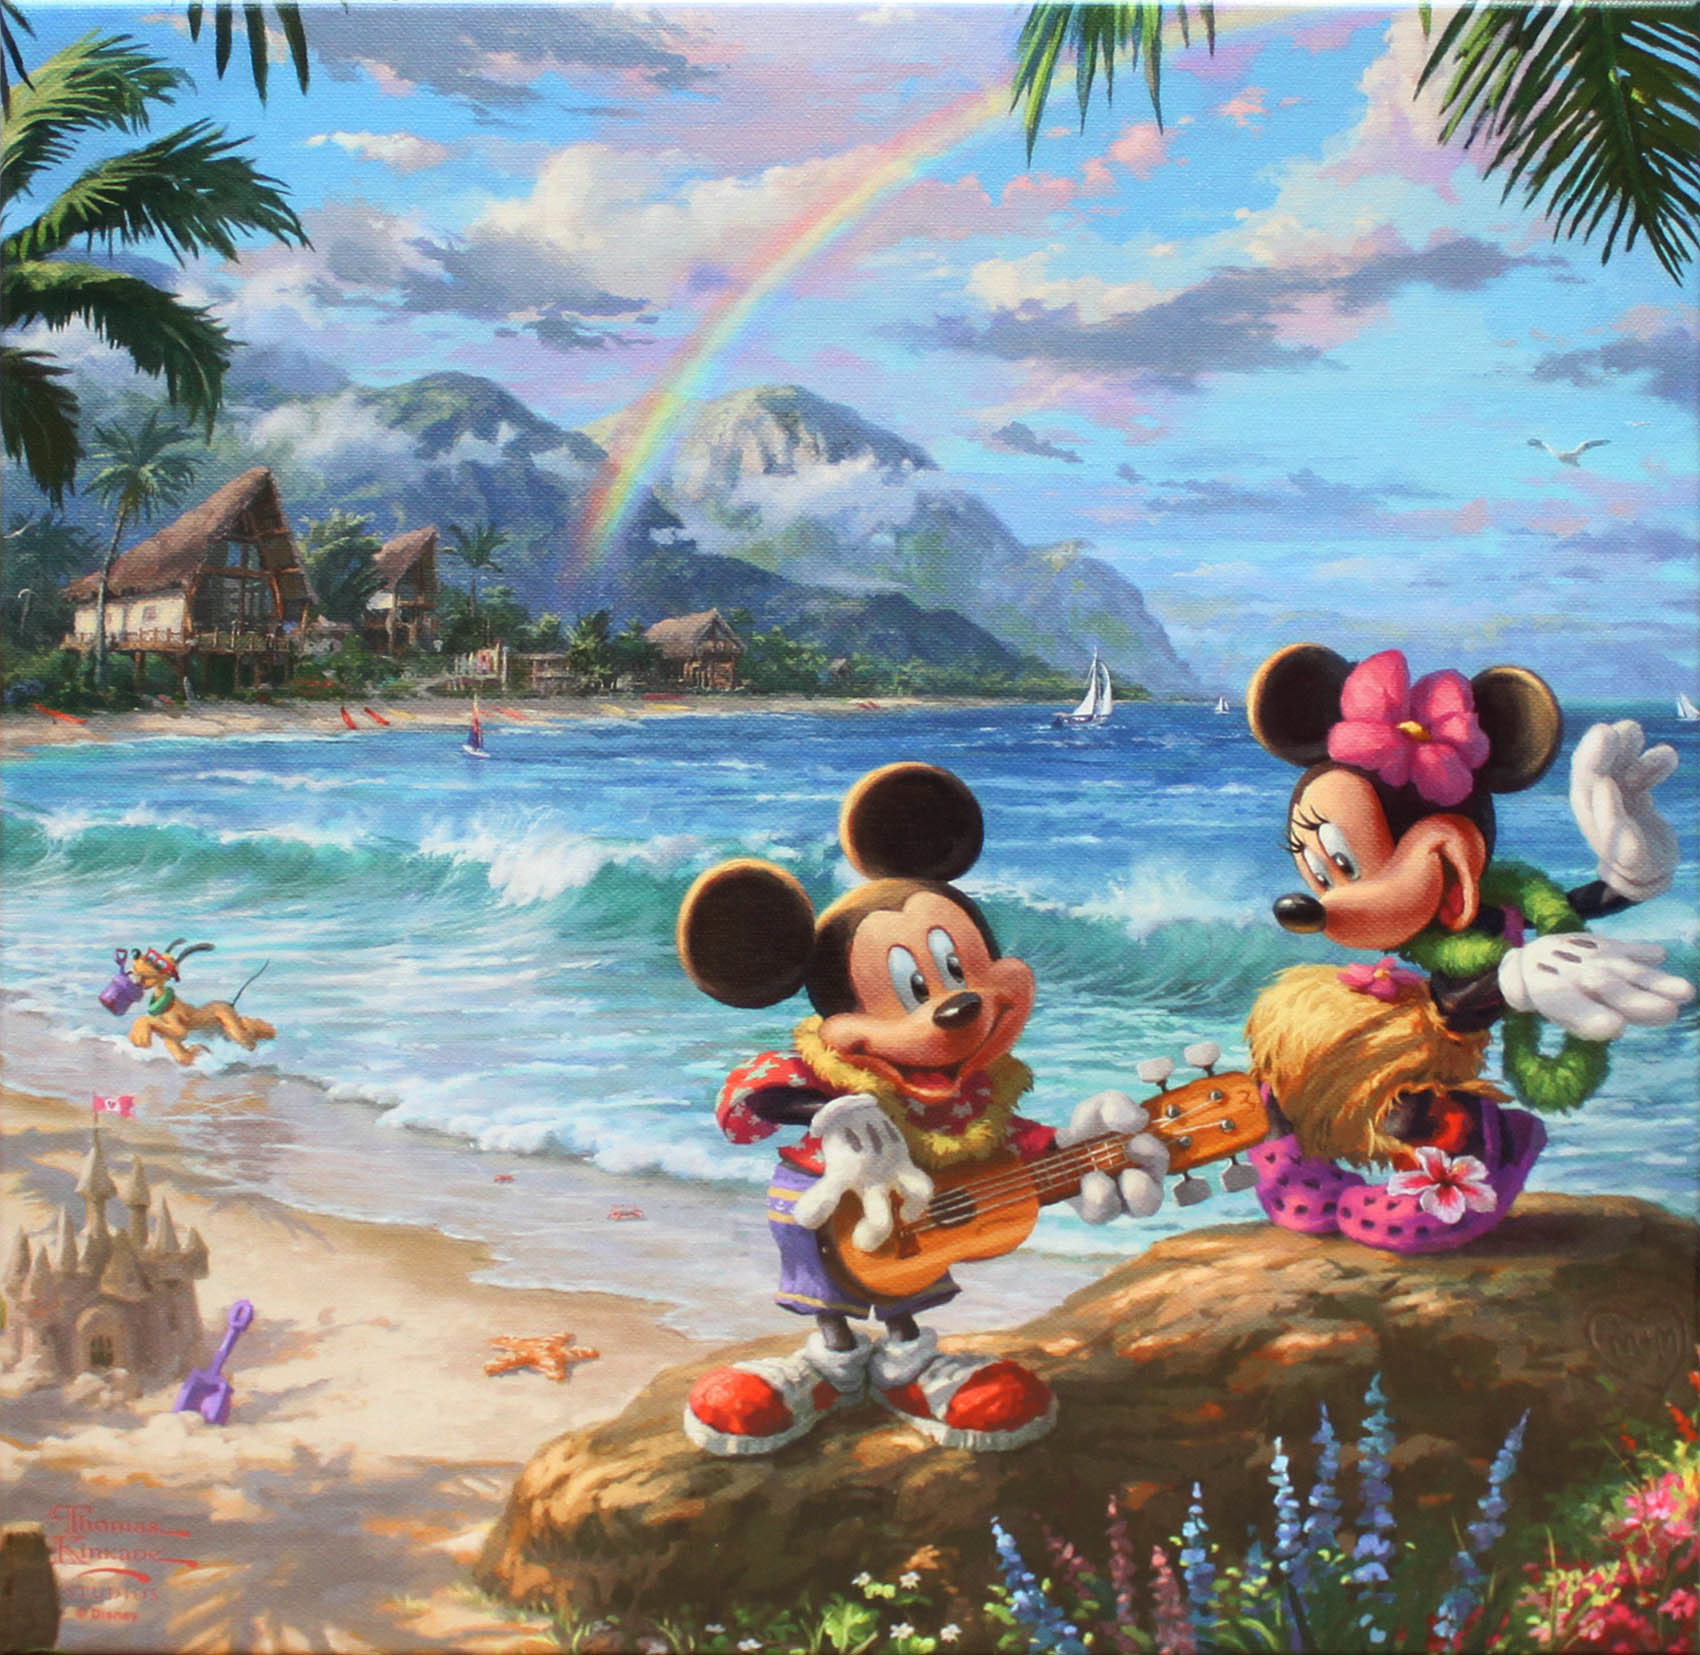 売り切れ必至 ディズニー Disney Us公式商品 ミッキーマウス ミッキー ミニーマウス ミニー 絵画 絵 アート 海 夜 浜辺 ビーチ 夕日 サンセット ジークレー ジクリー版画 インテリア 装飾 限定版 キャンバス 並行輸入品 Mickey And Minnie Mouse Giclee ウォル